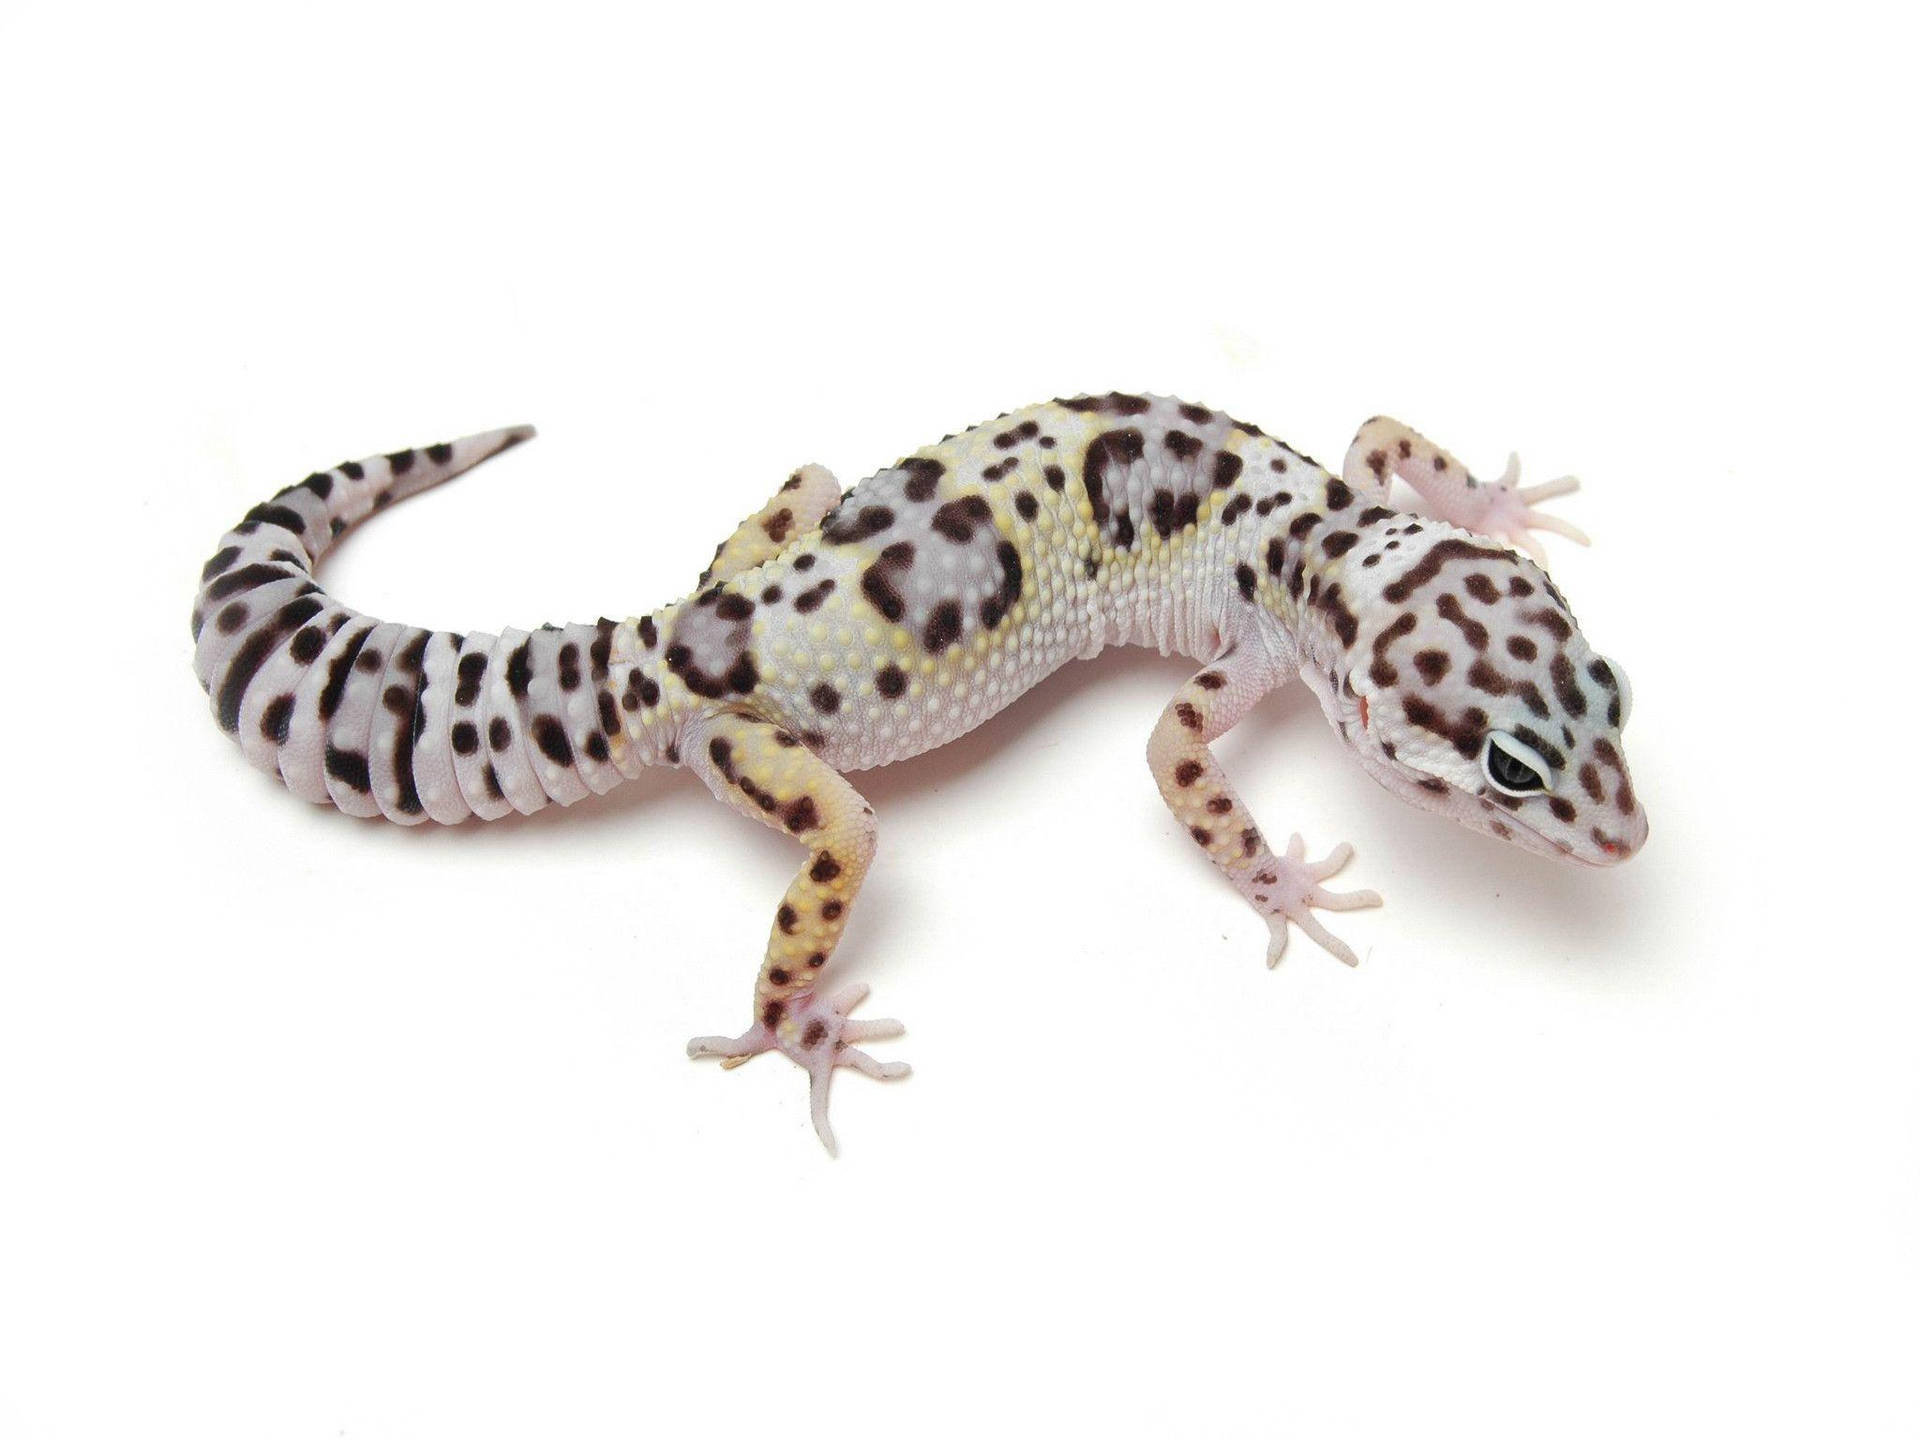 A Leopard Gecko Crawling on a Desert Rock Wallpaper